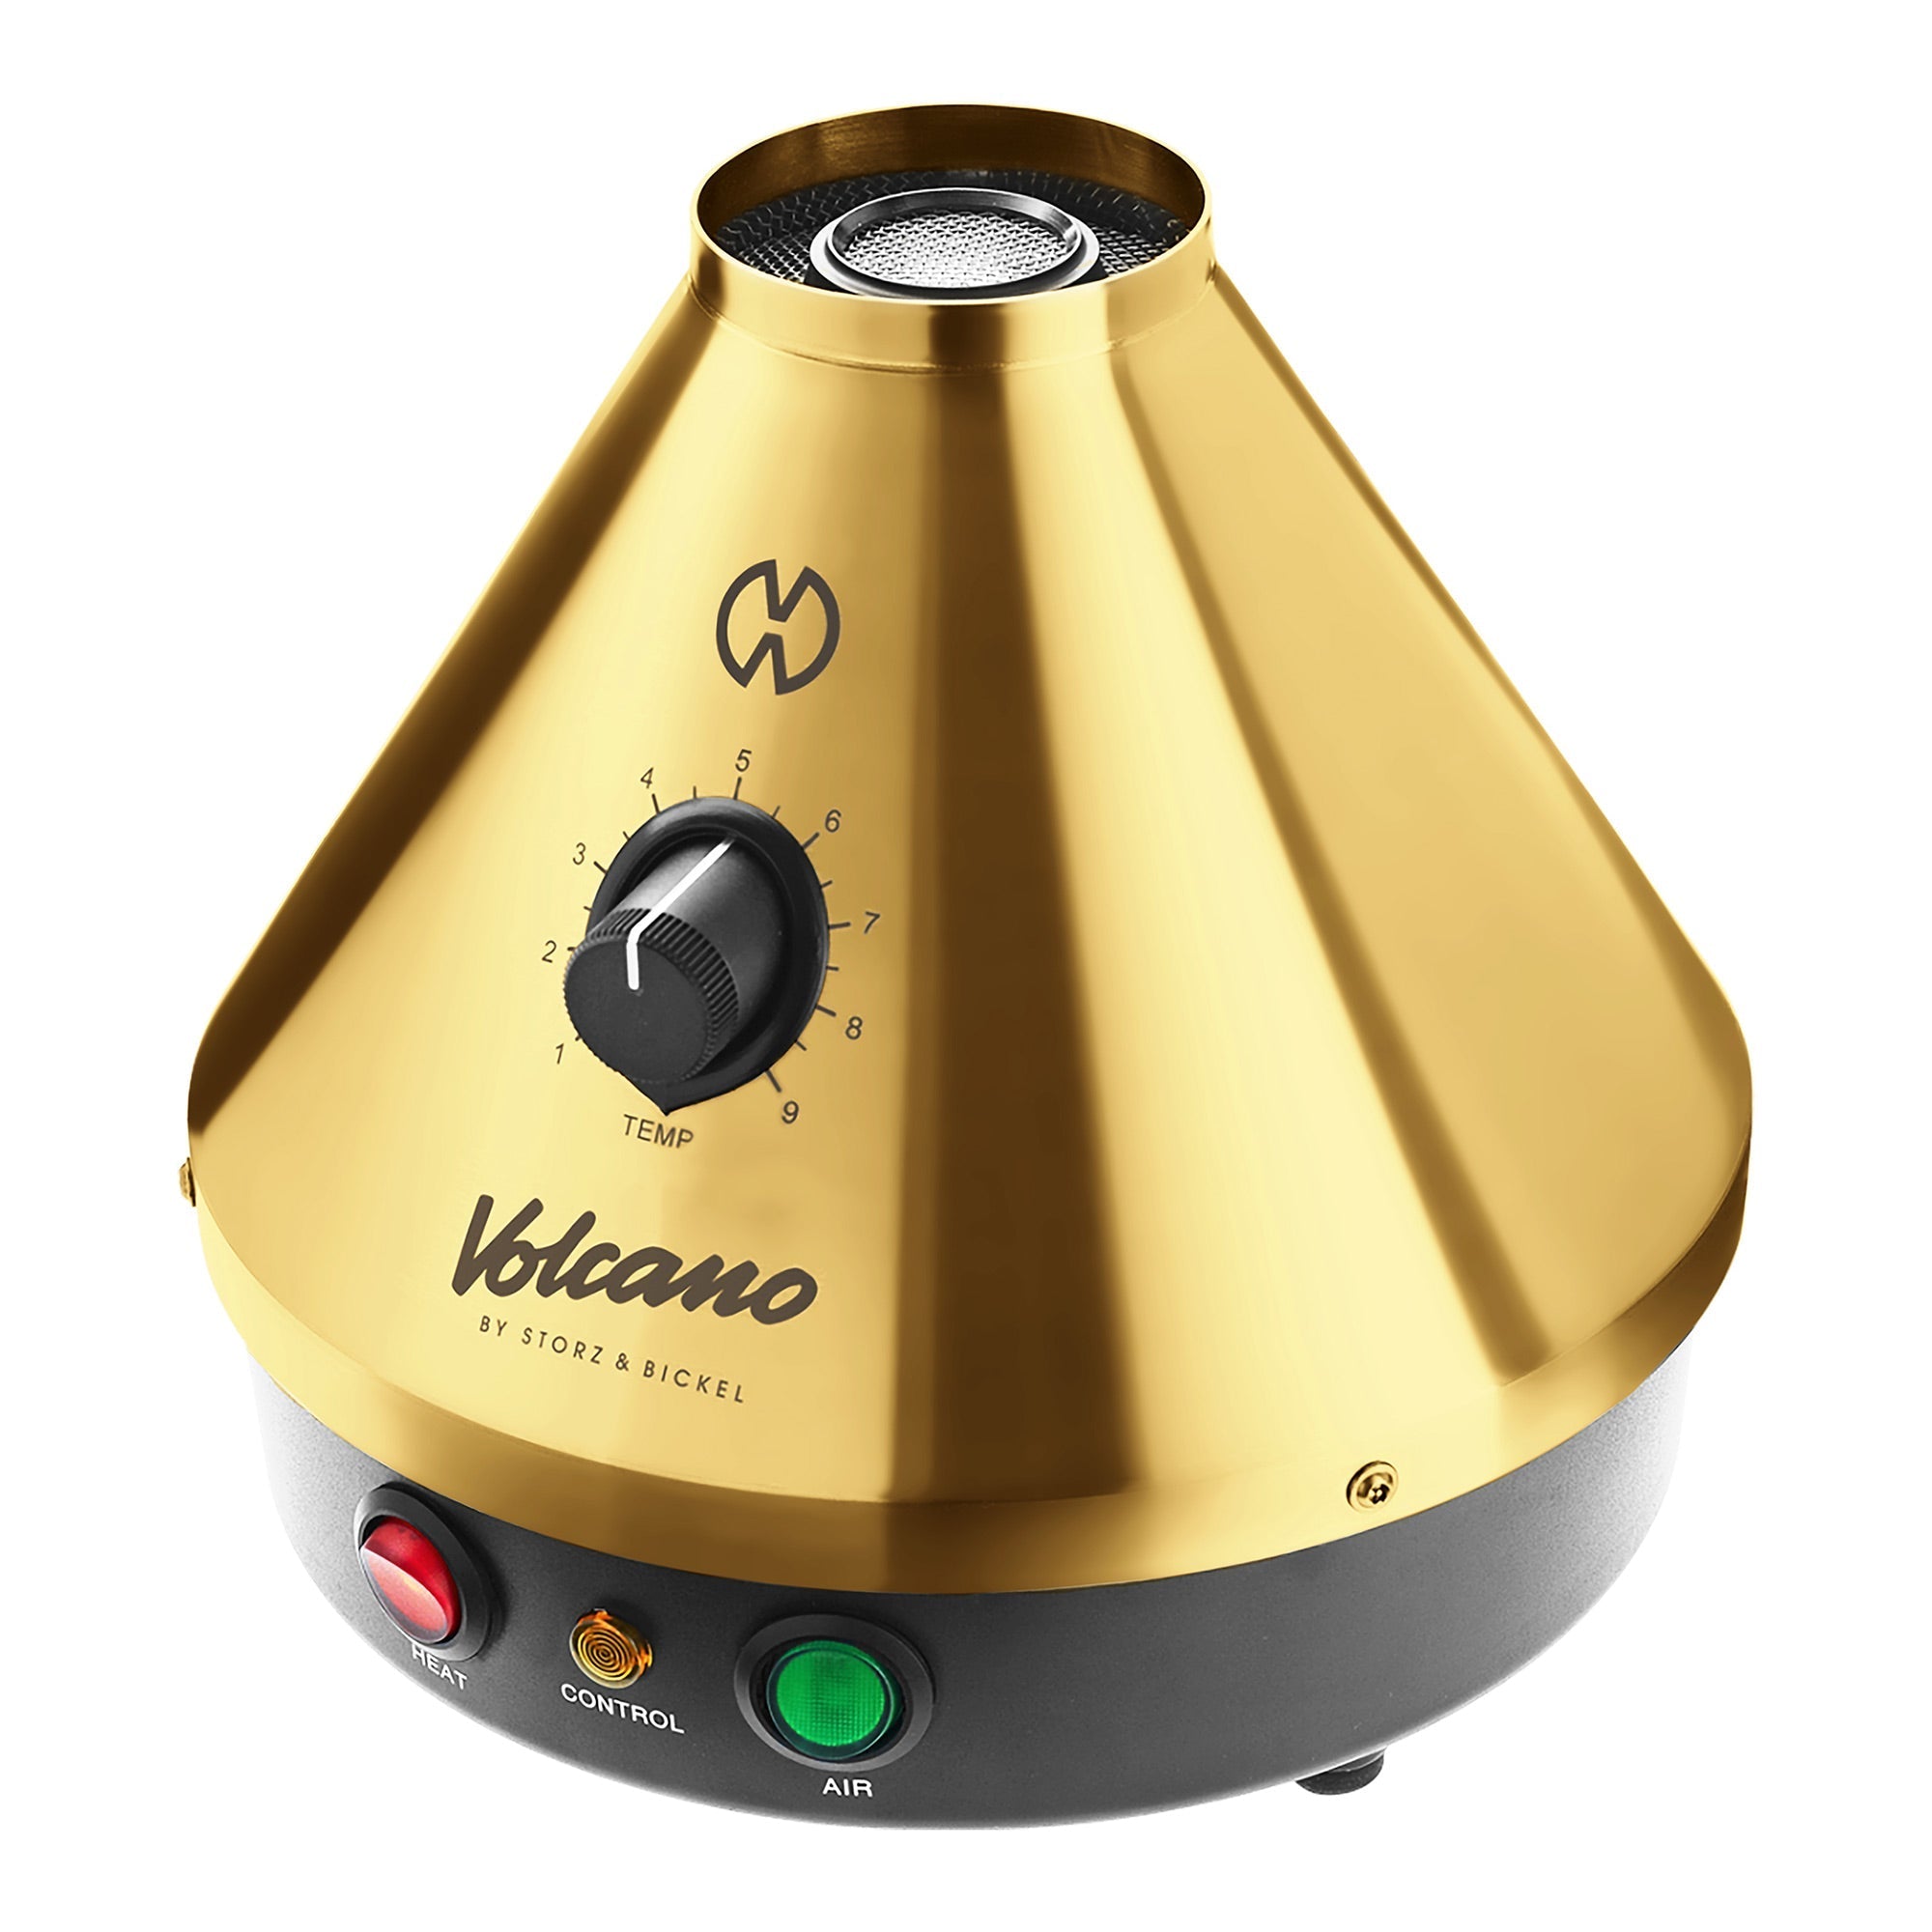 Storz & Bickel  Volcano Classic Gold desktop vaporizer